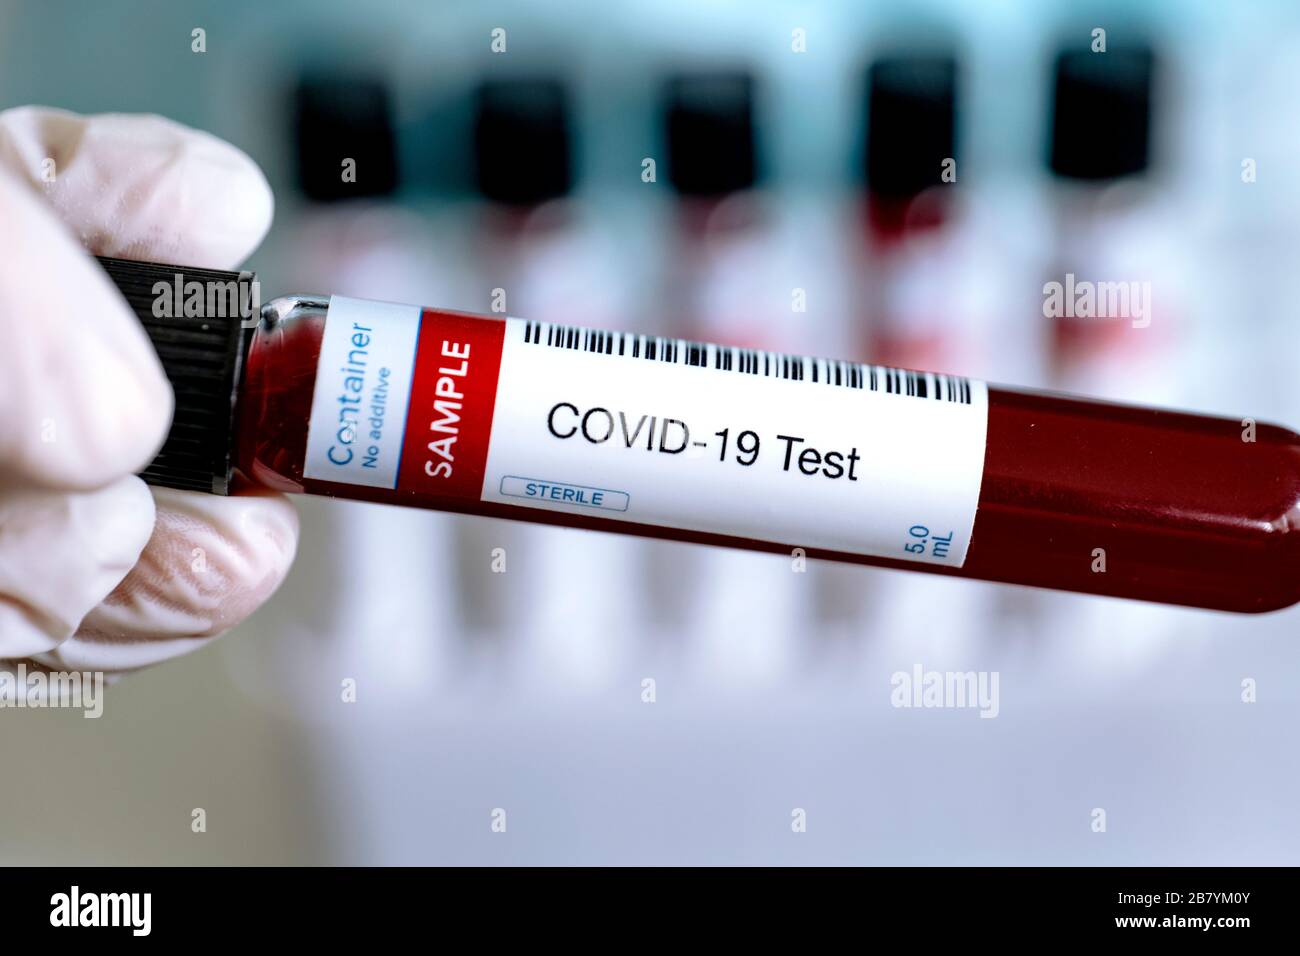 Test per la presenza di coronavirus. Provetta contenente un campione di sangue per la diagnosi di COVID-19. Tubi sullo sfondo. Foto Stock